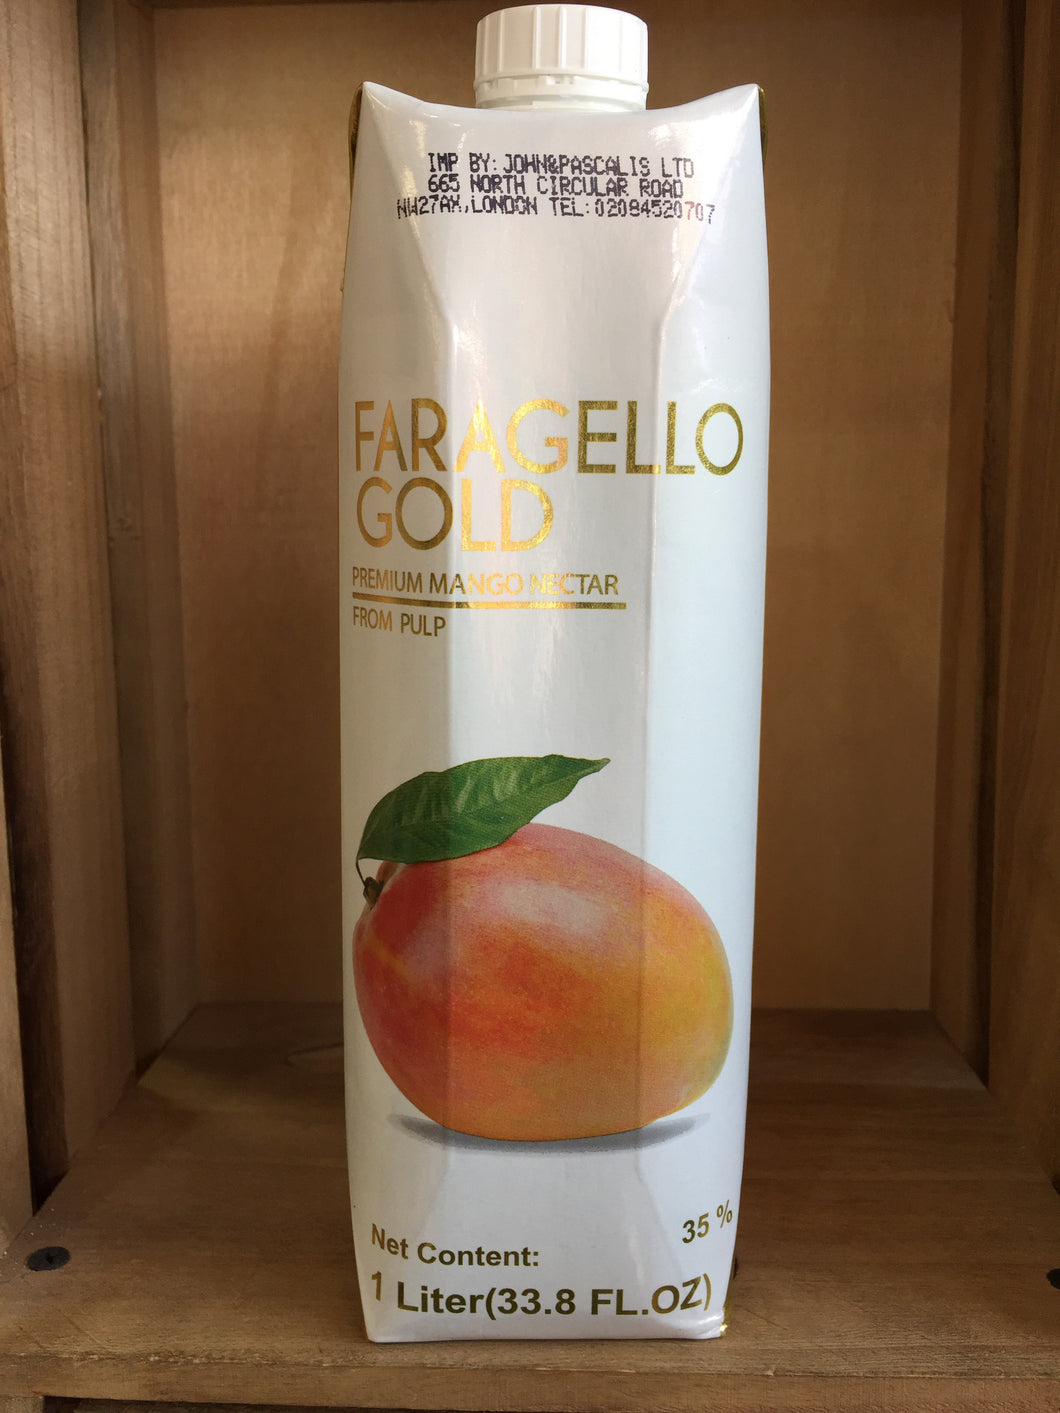 Faragello Gold Premium Mango Juice 1L